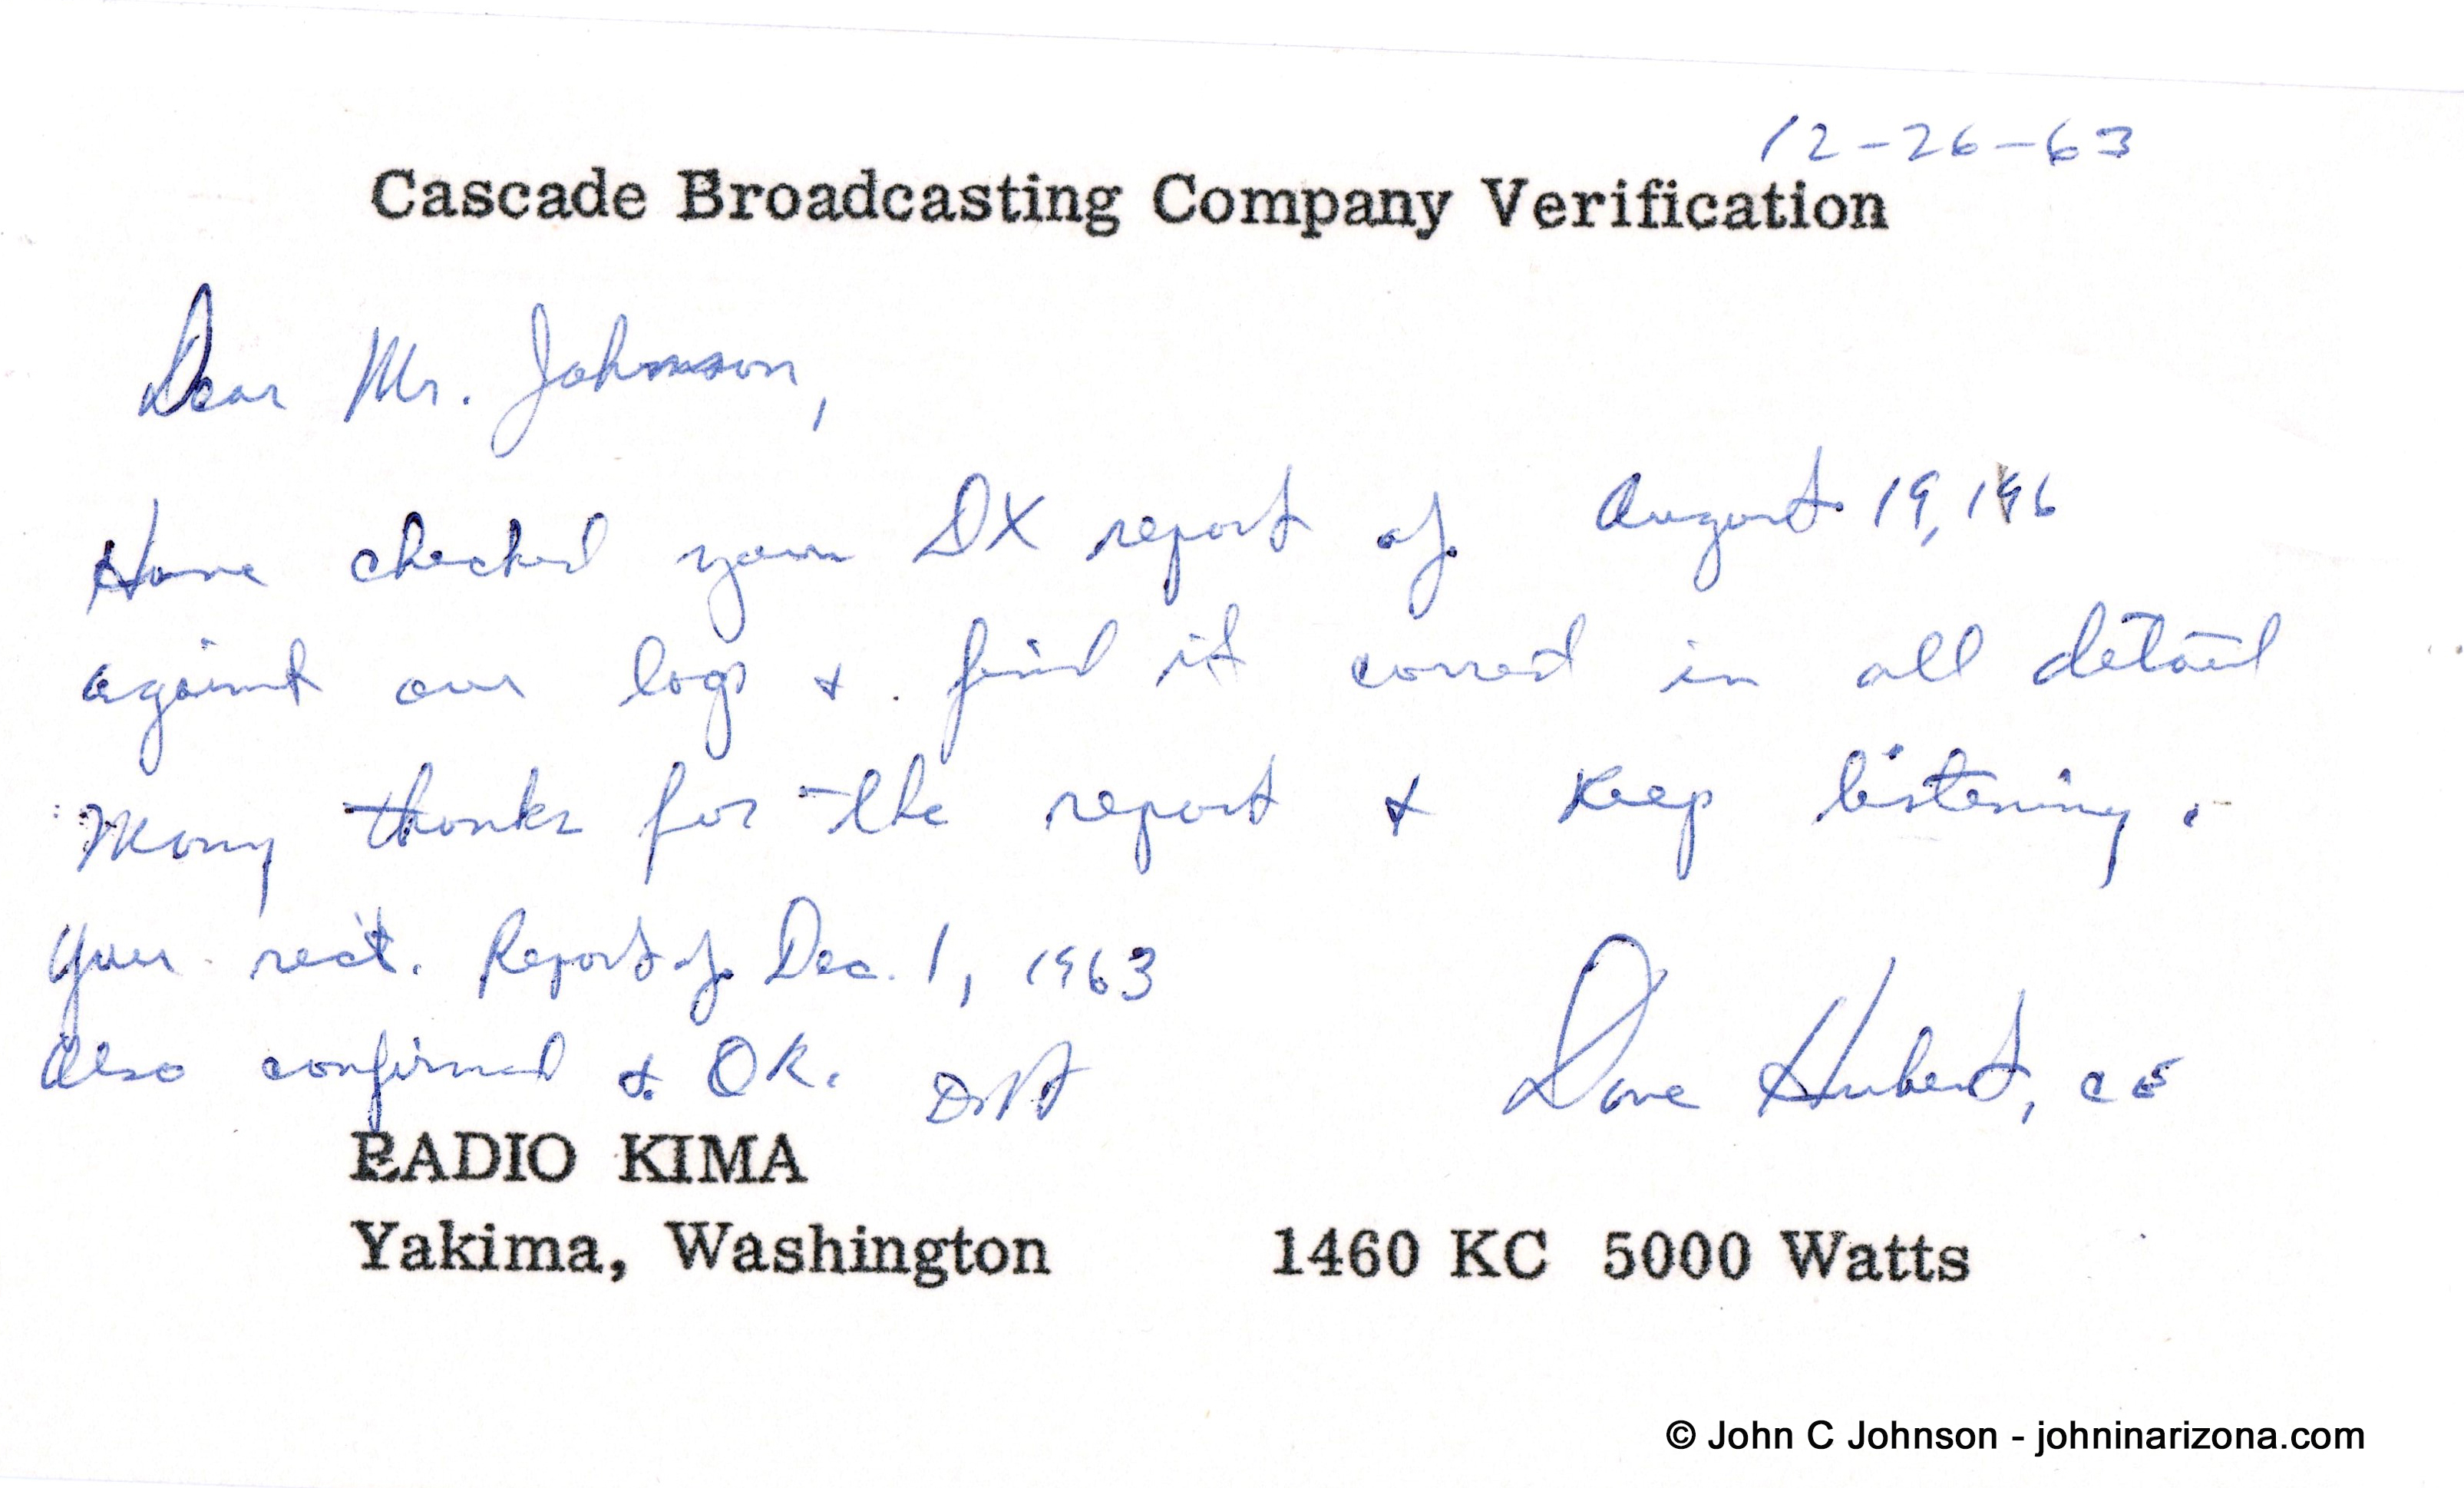 KIMA Radio 1460 Yakima, Washington